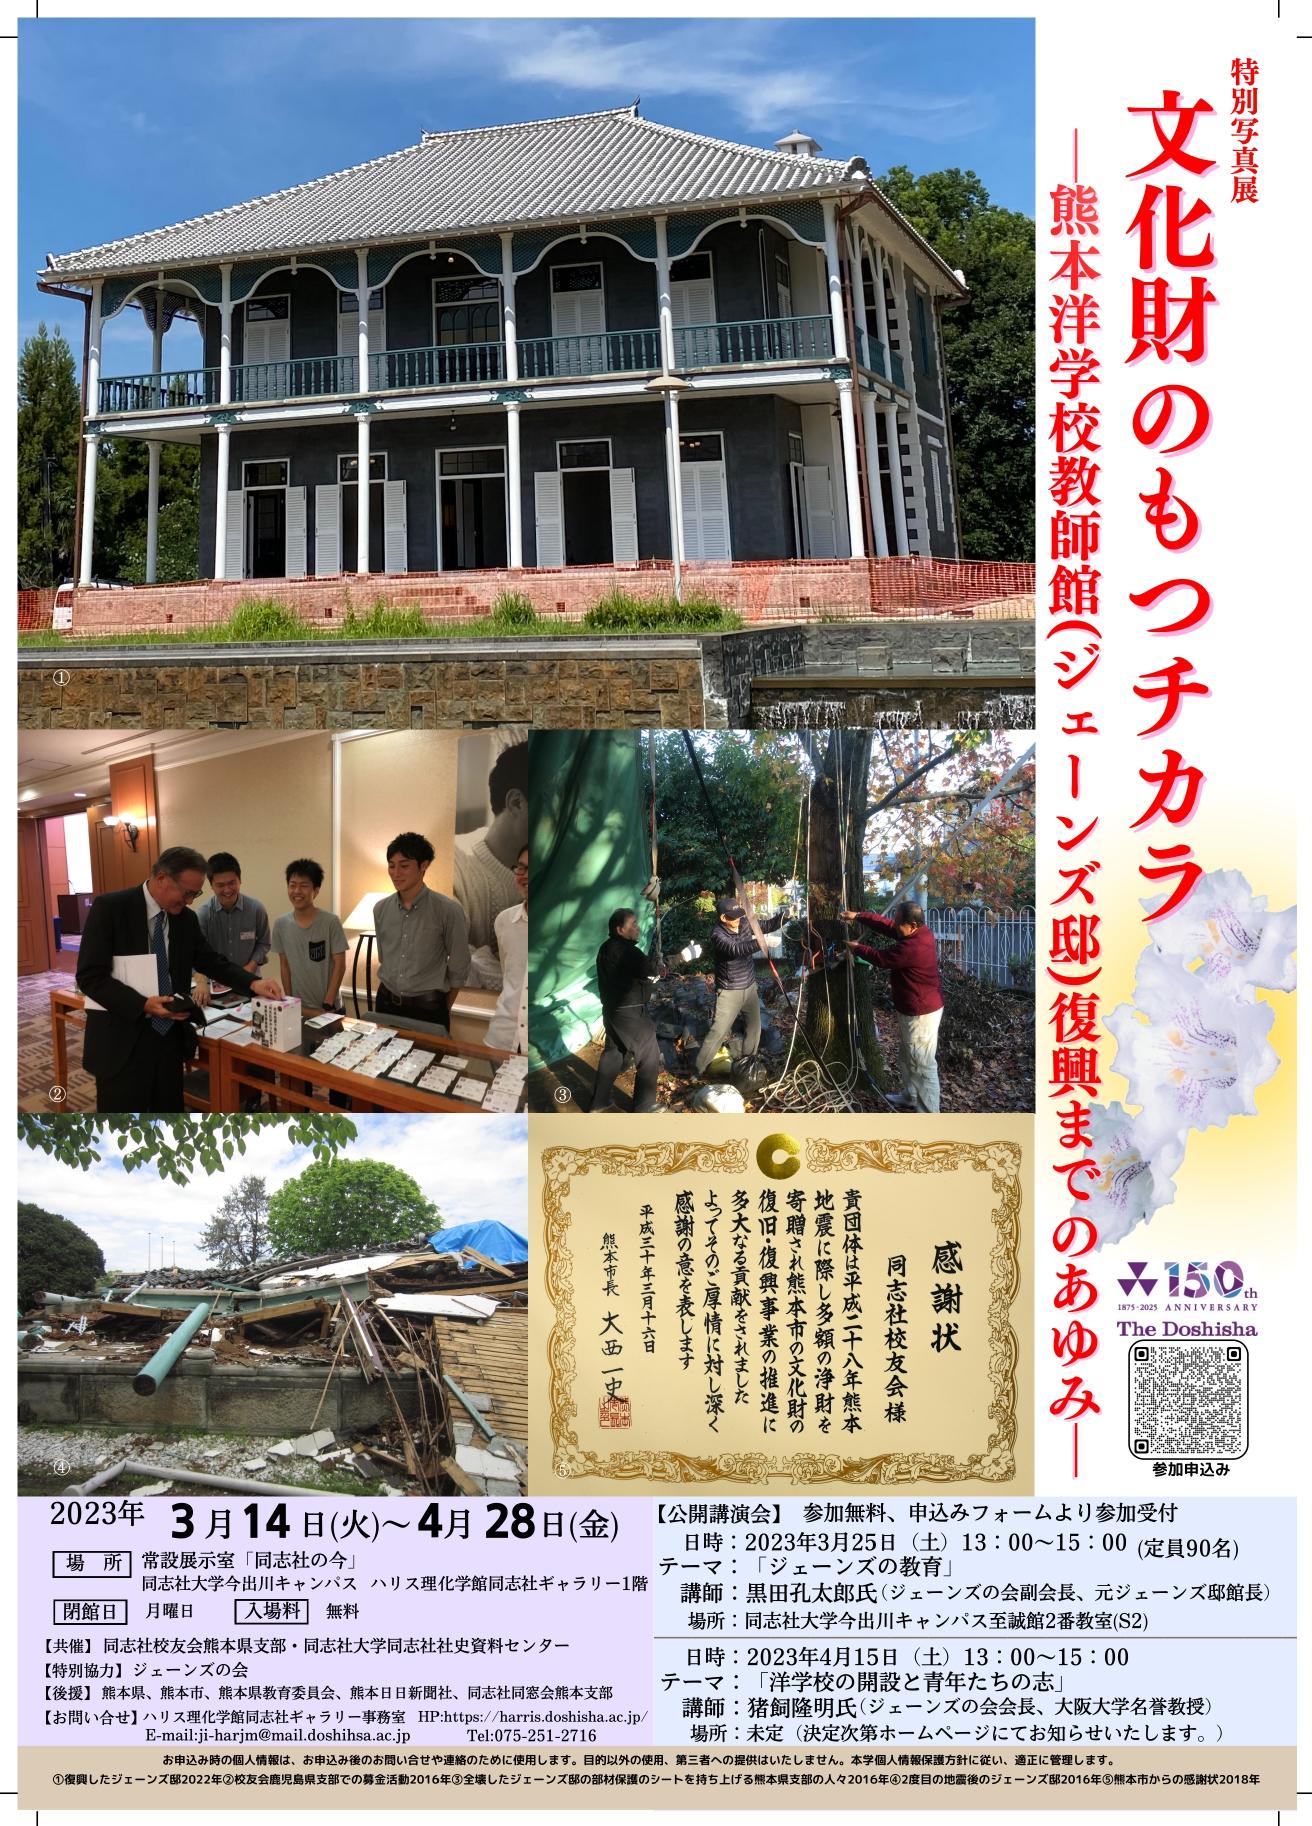 同志社ゆかりの建物、熊本のジェーンズ邸復興記念特別写真展「文化財のもつチカラ -- 熊本洋学校教師館（ジェーンズ邸）復興までのあゆみ -- 」開催